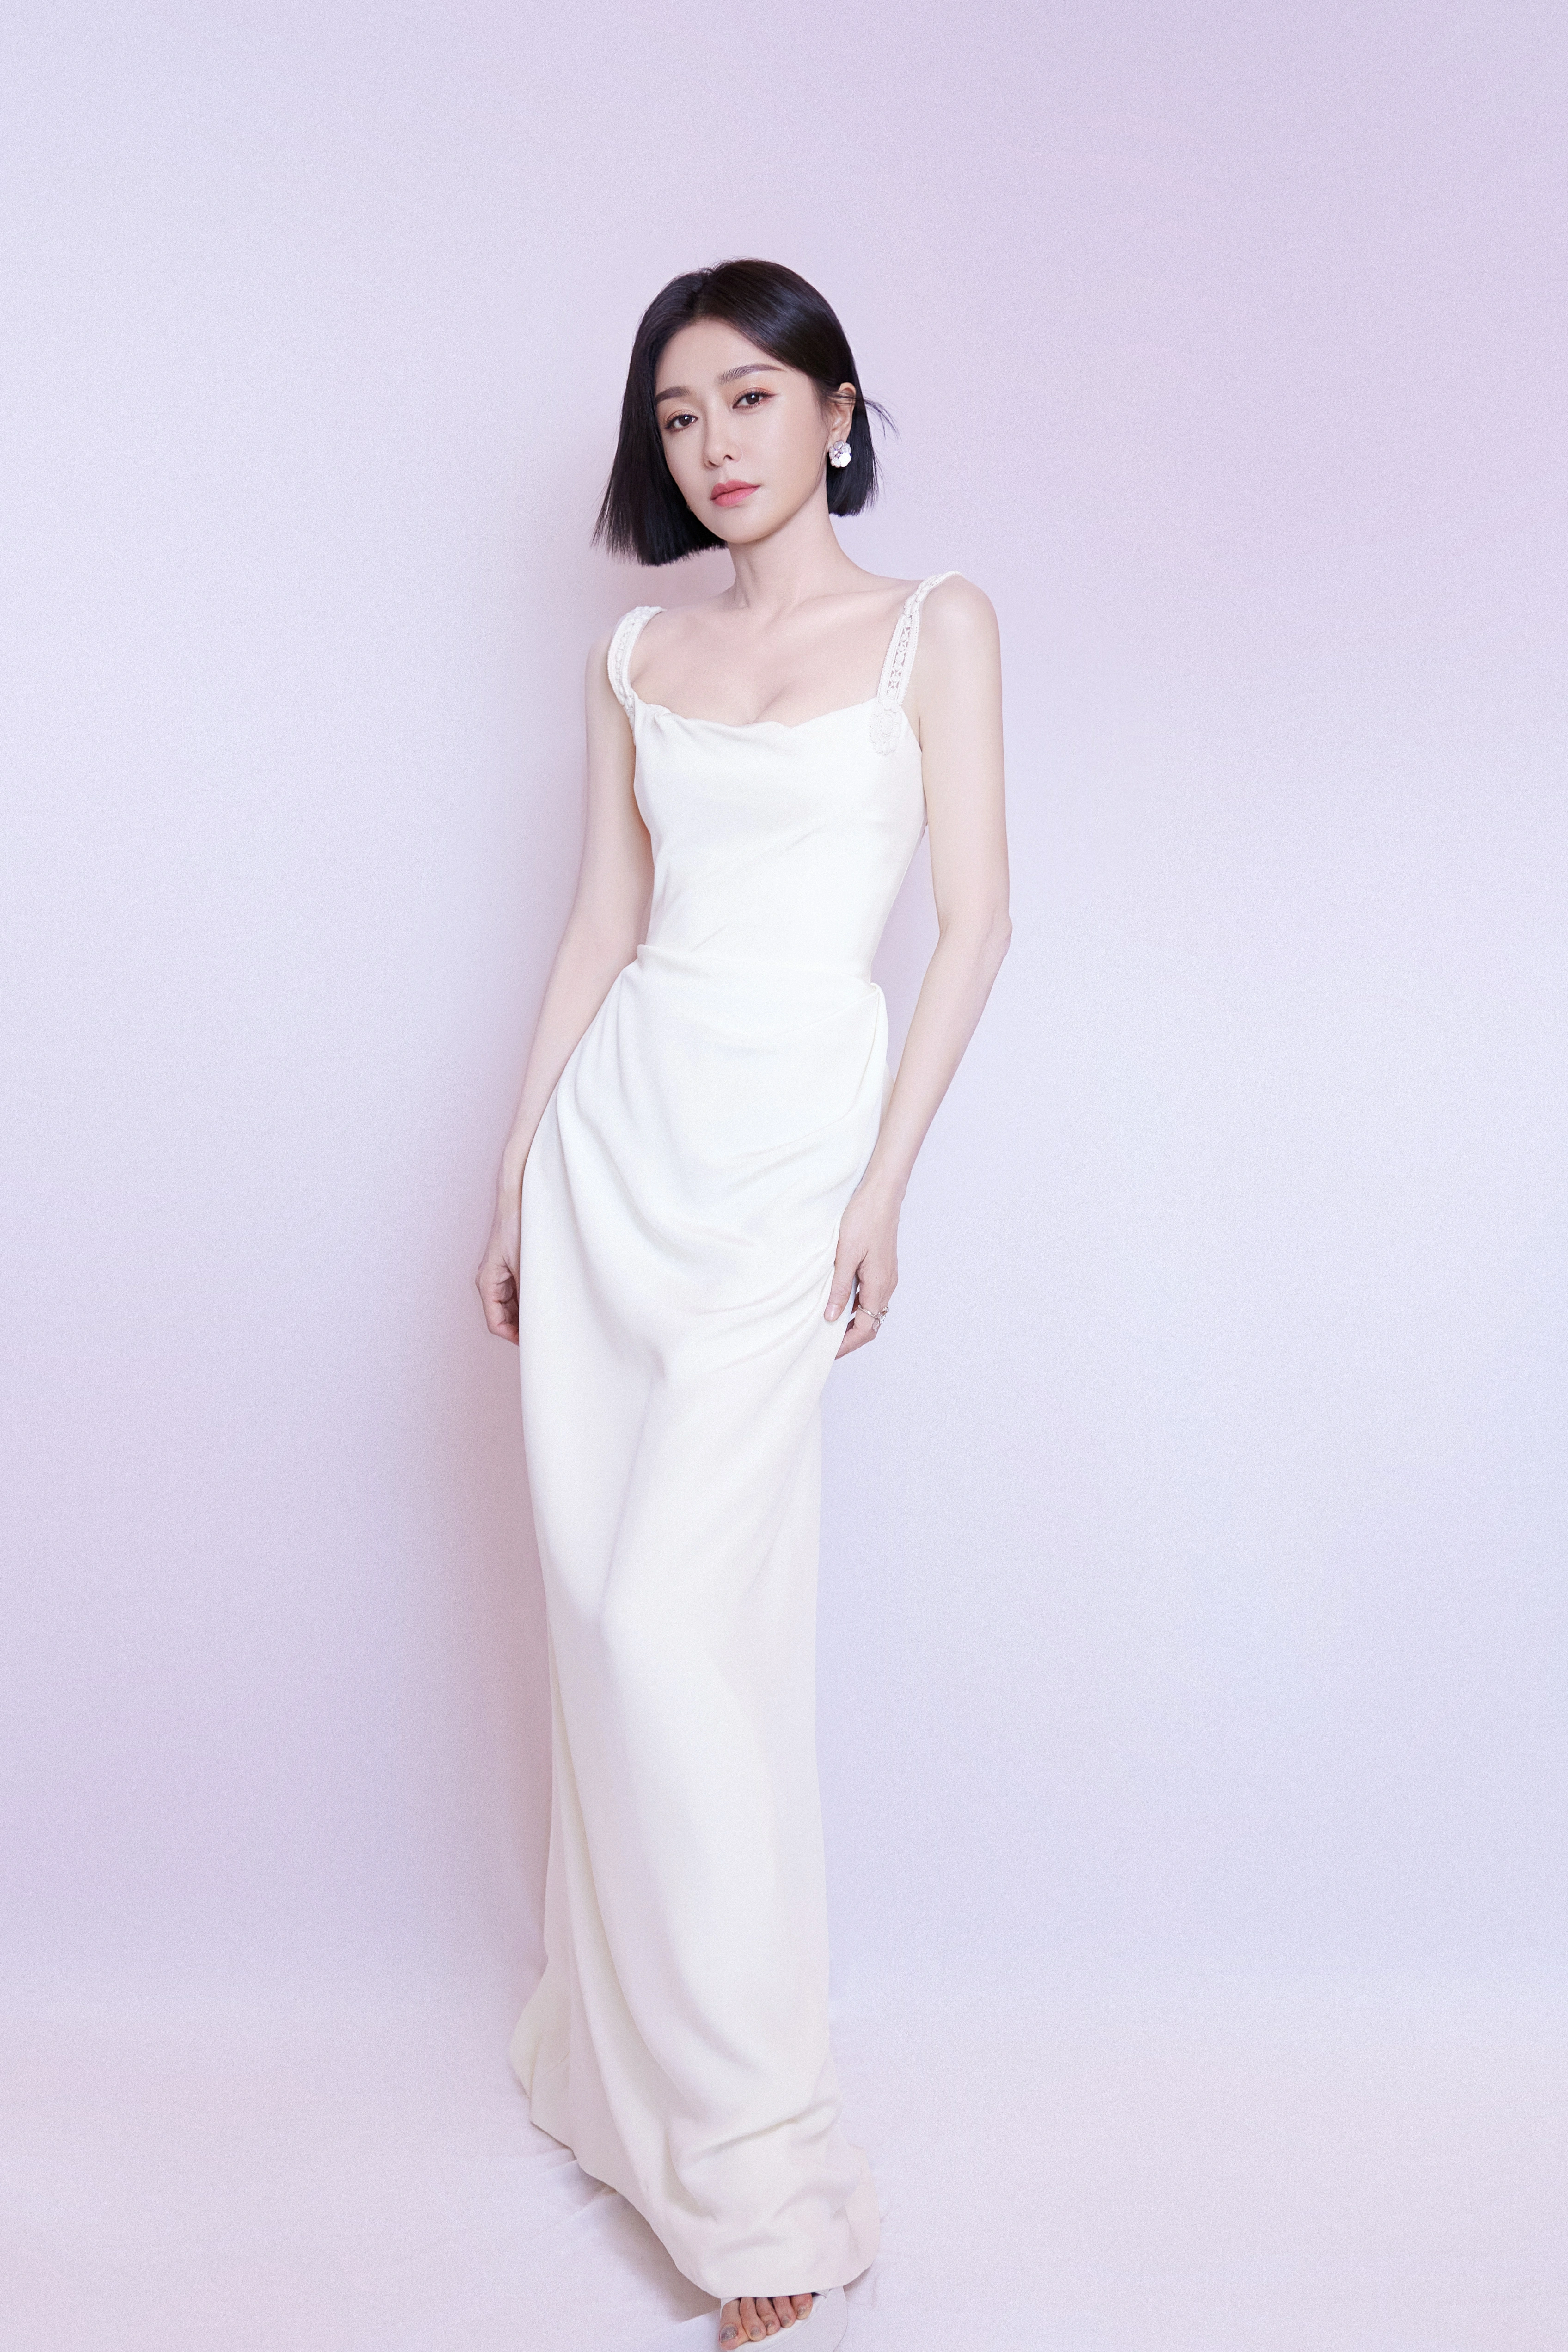 秦岚白色吊带长裙造型好优雅 捧鲜花镜头前甜笑尽显好身材,1 (2)